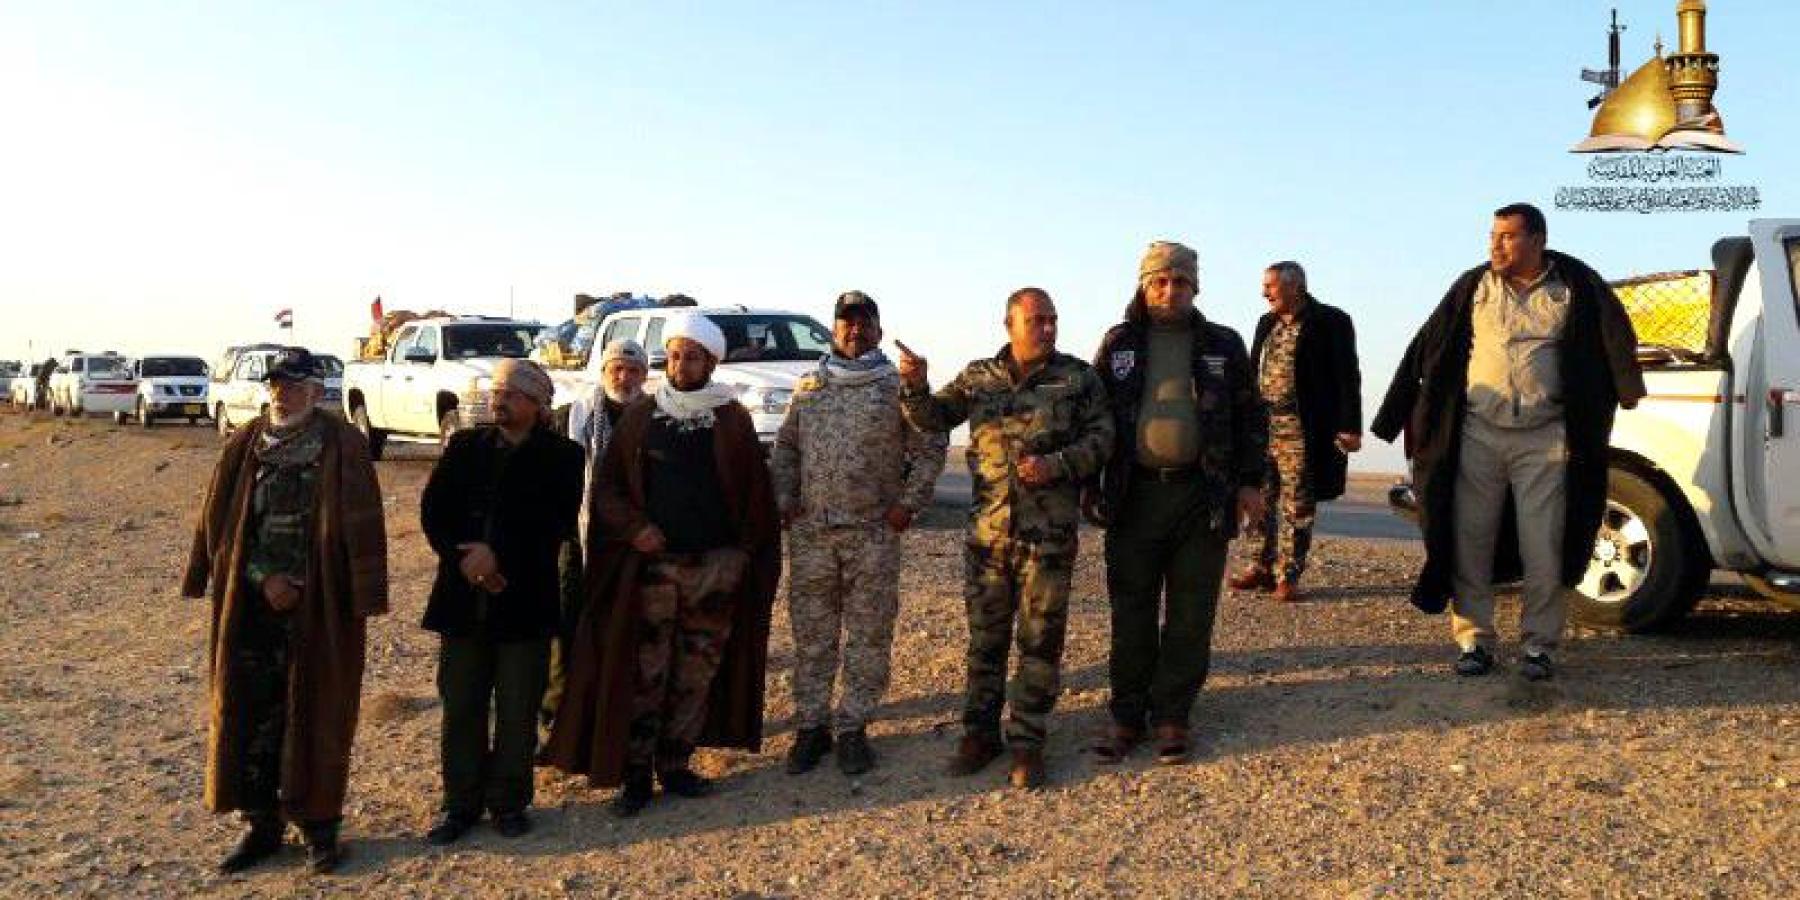 لجنة الإرشاد تقدم الدعم اللوجستي وتنقل توصيات وسلام المرجعية الدينية للمرابطين على الحدود العراقية – السورية